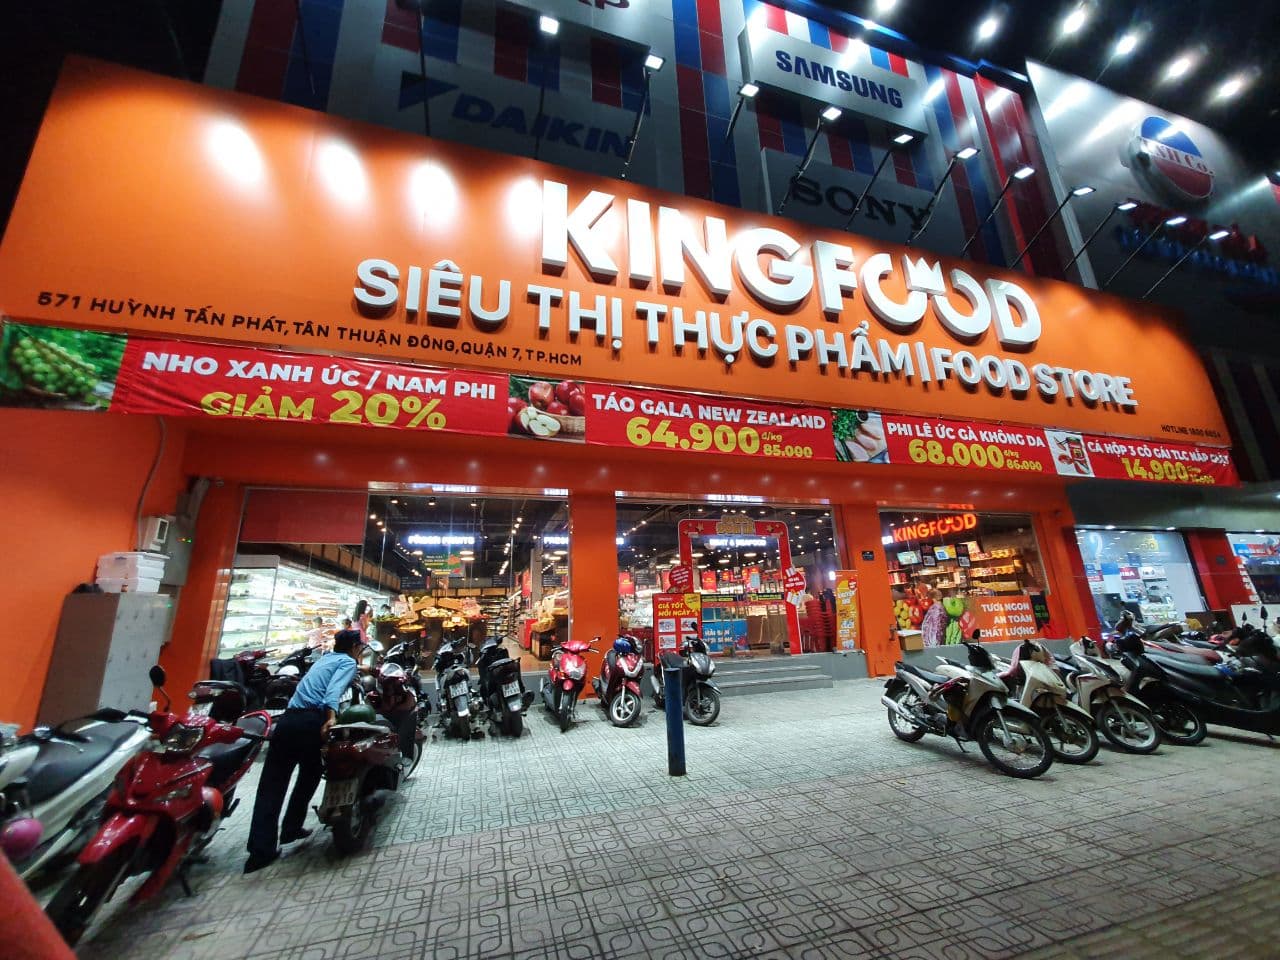 Kingfoodmart Huỳnh Tấn Phát, Quận 7